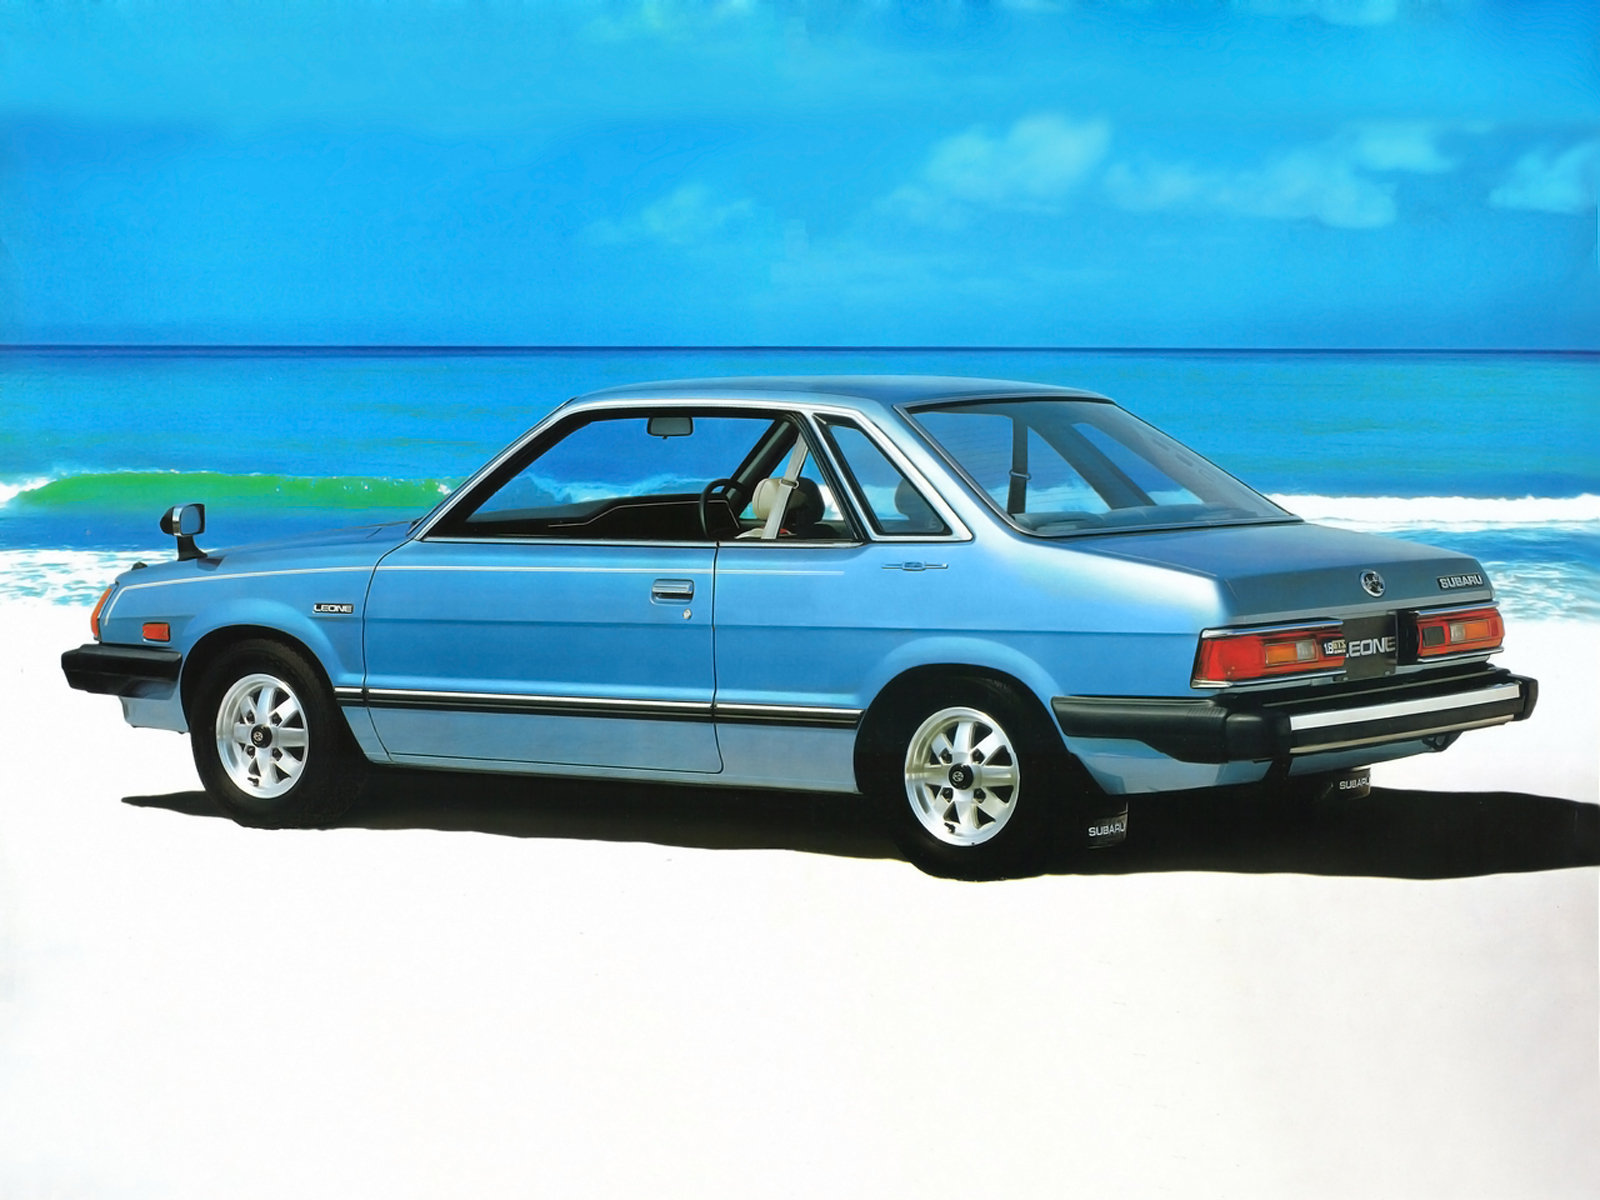 Subaru Leone 1981